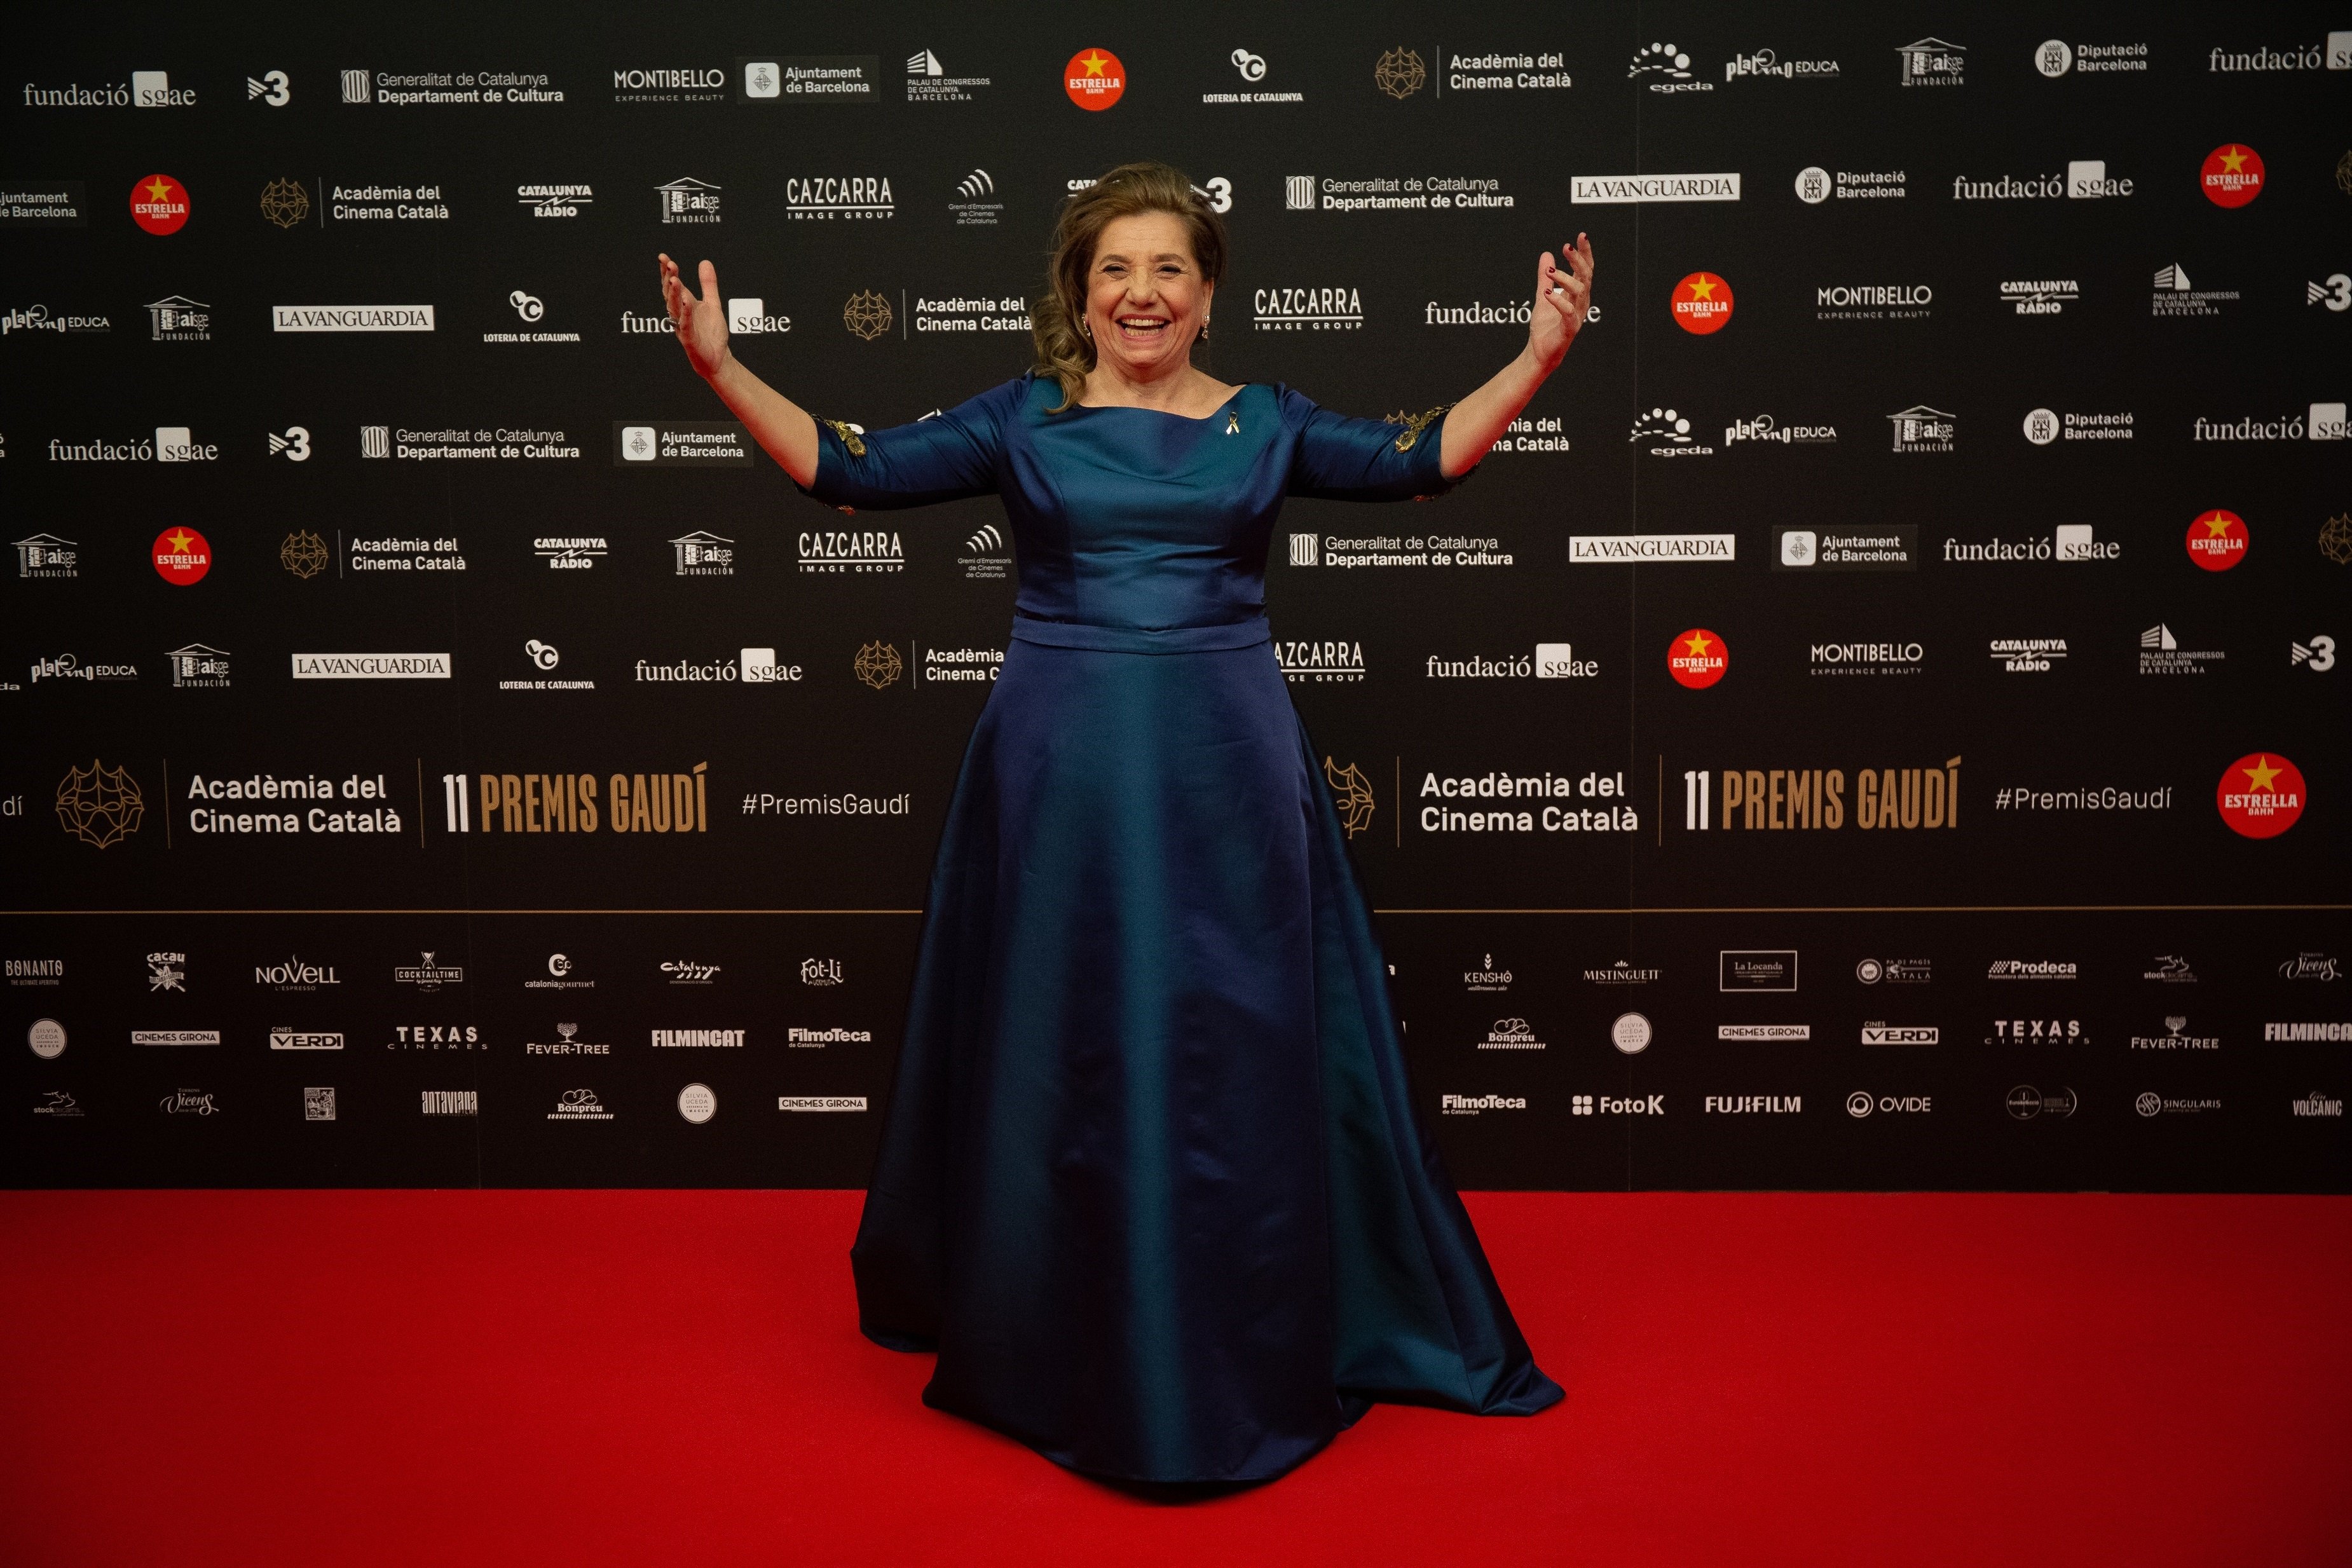 Los Premis Gaudí regresan este domingo con tres filmes favoritos